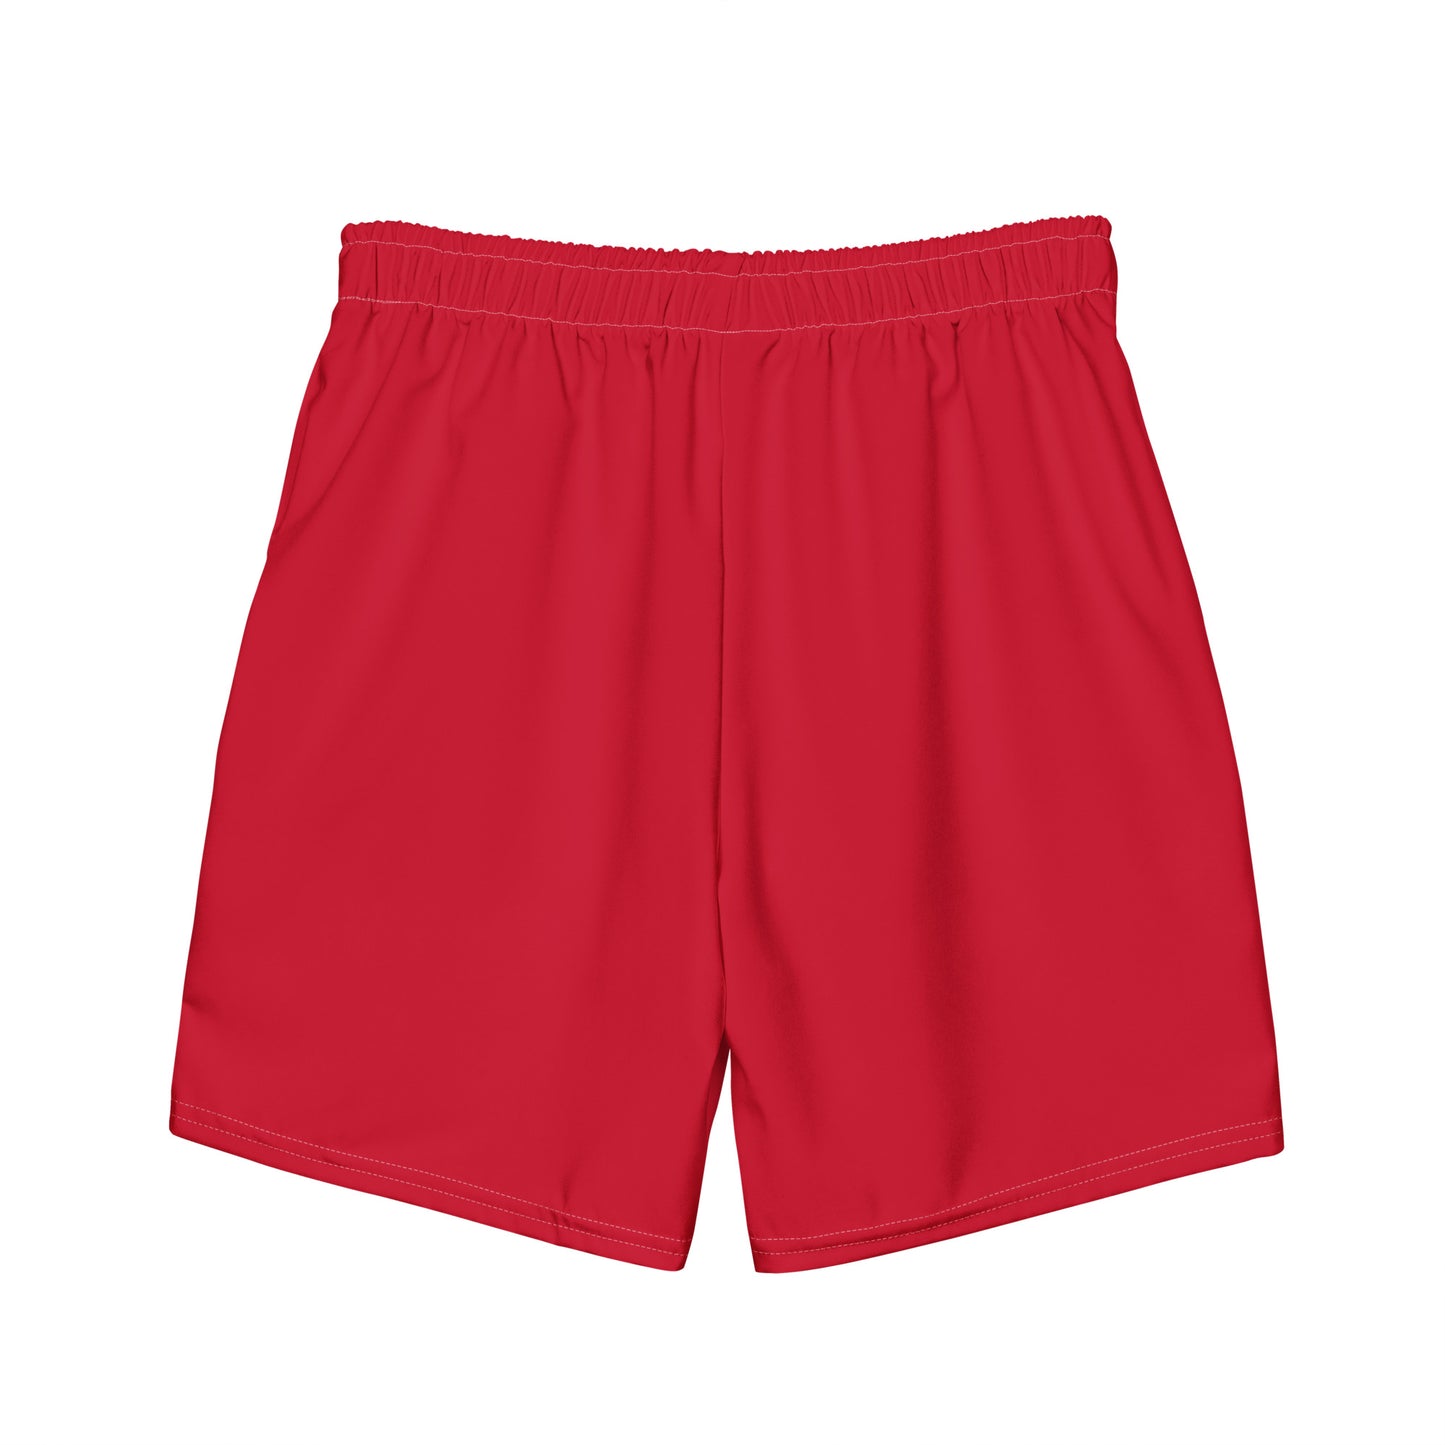 Crimson Red - Sustainably Made Men's swim trunks